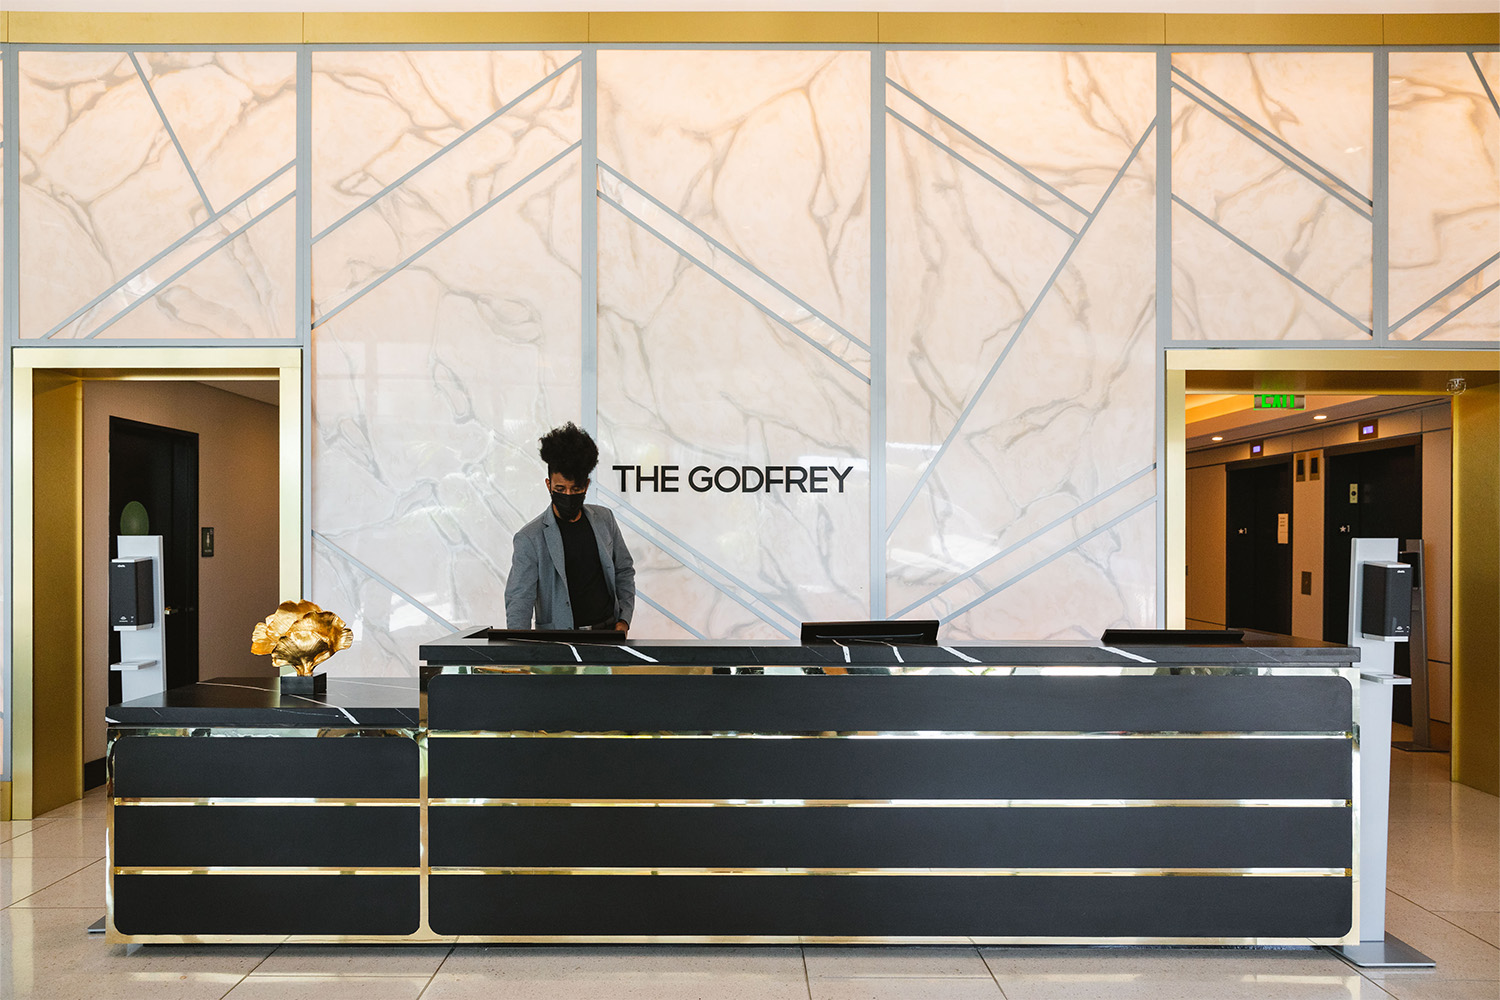 The lobby of The Godfrey.